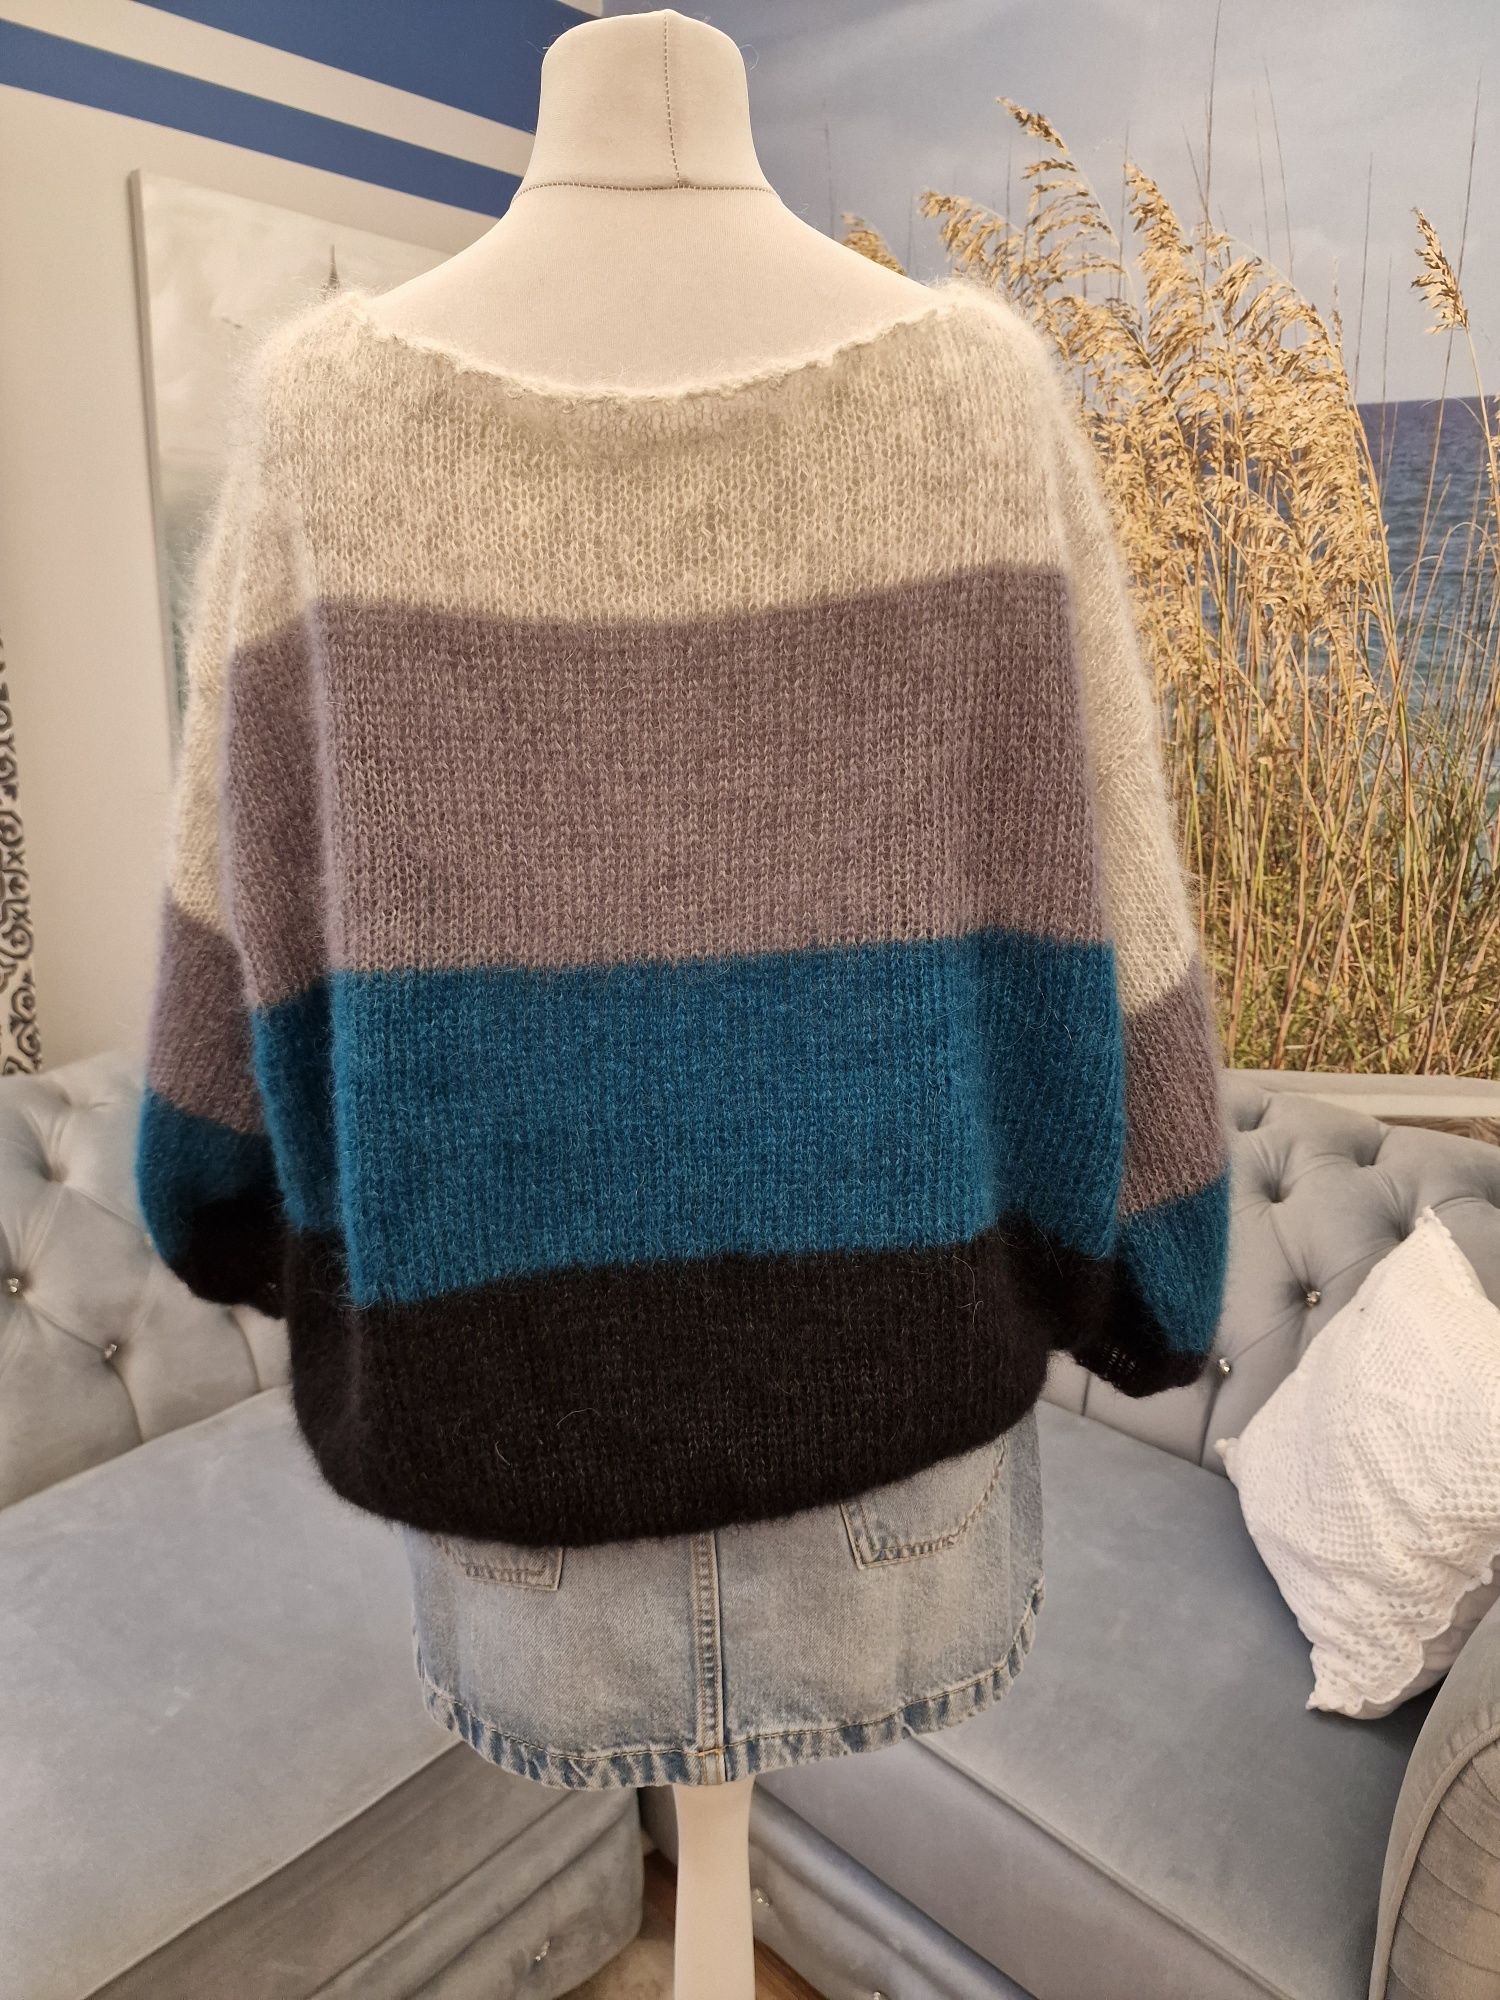 Sweter handmade w odcieniach szarości, turkusu i czerni